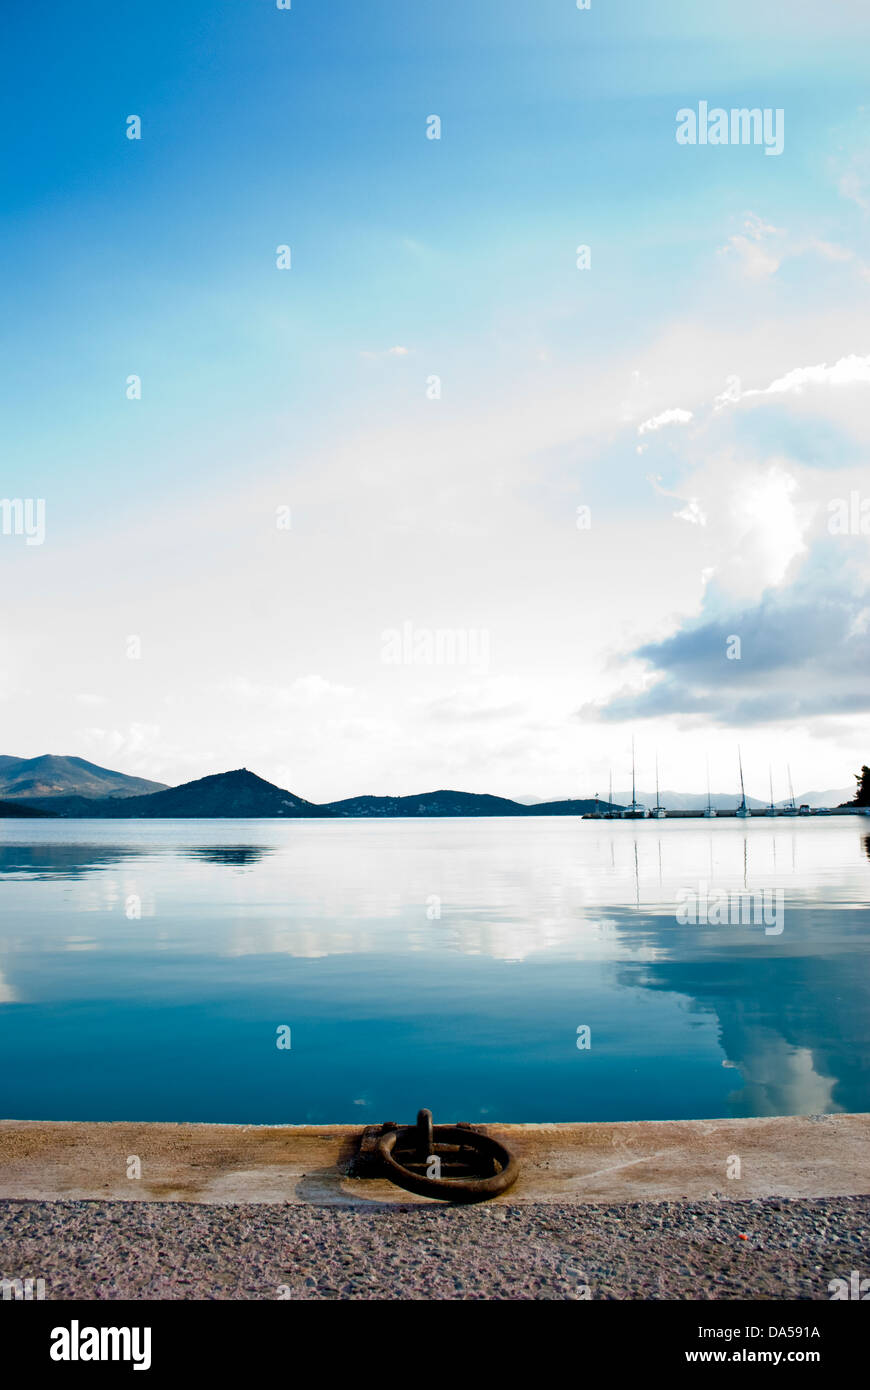 Schöne bunte Landschaft Meer Berge und blauer Himmel im Hafen oder Hafen als Urlaub Konzept oder Postkarte Stockfoto